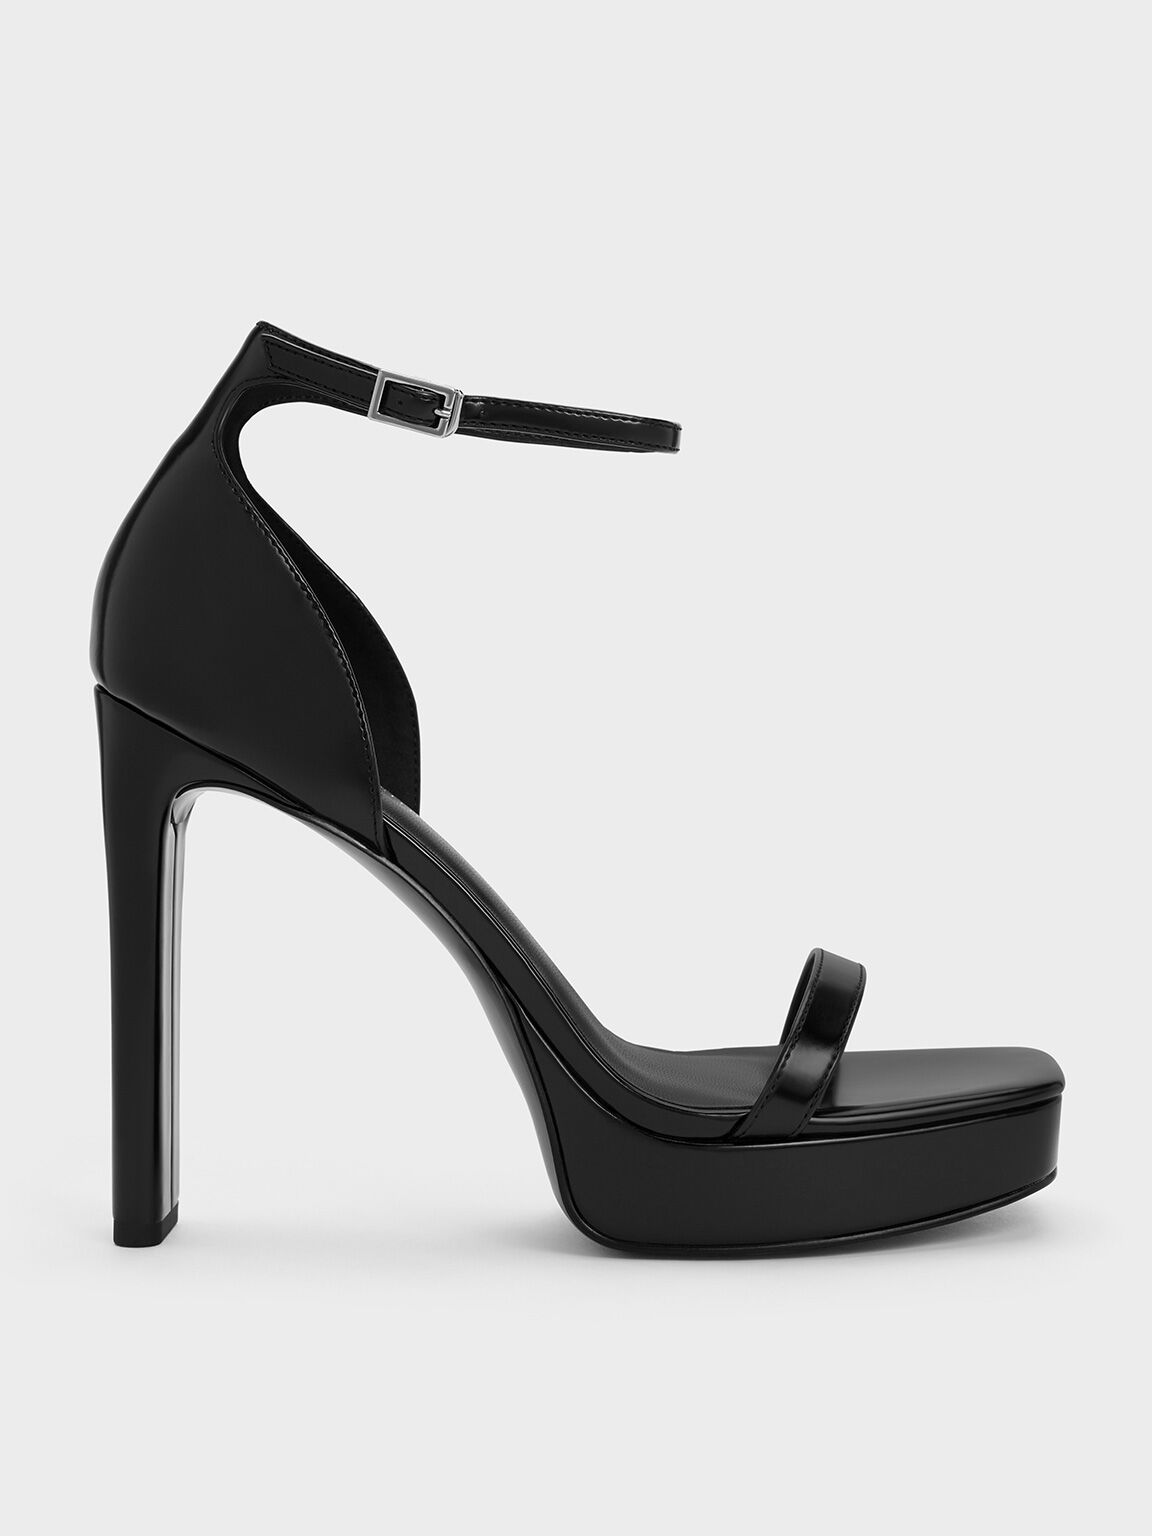 Ankle-Strap Platform Sandals, หนังเงาสีดำ, hi-res